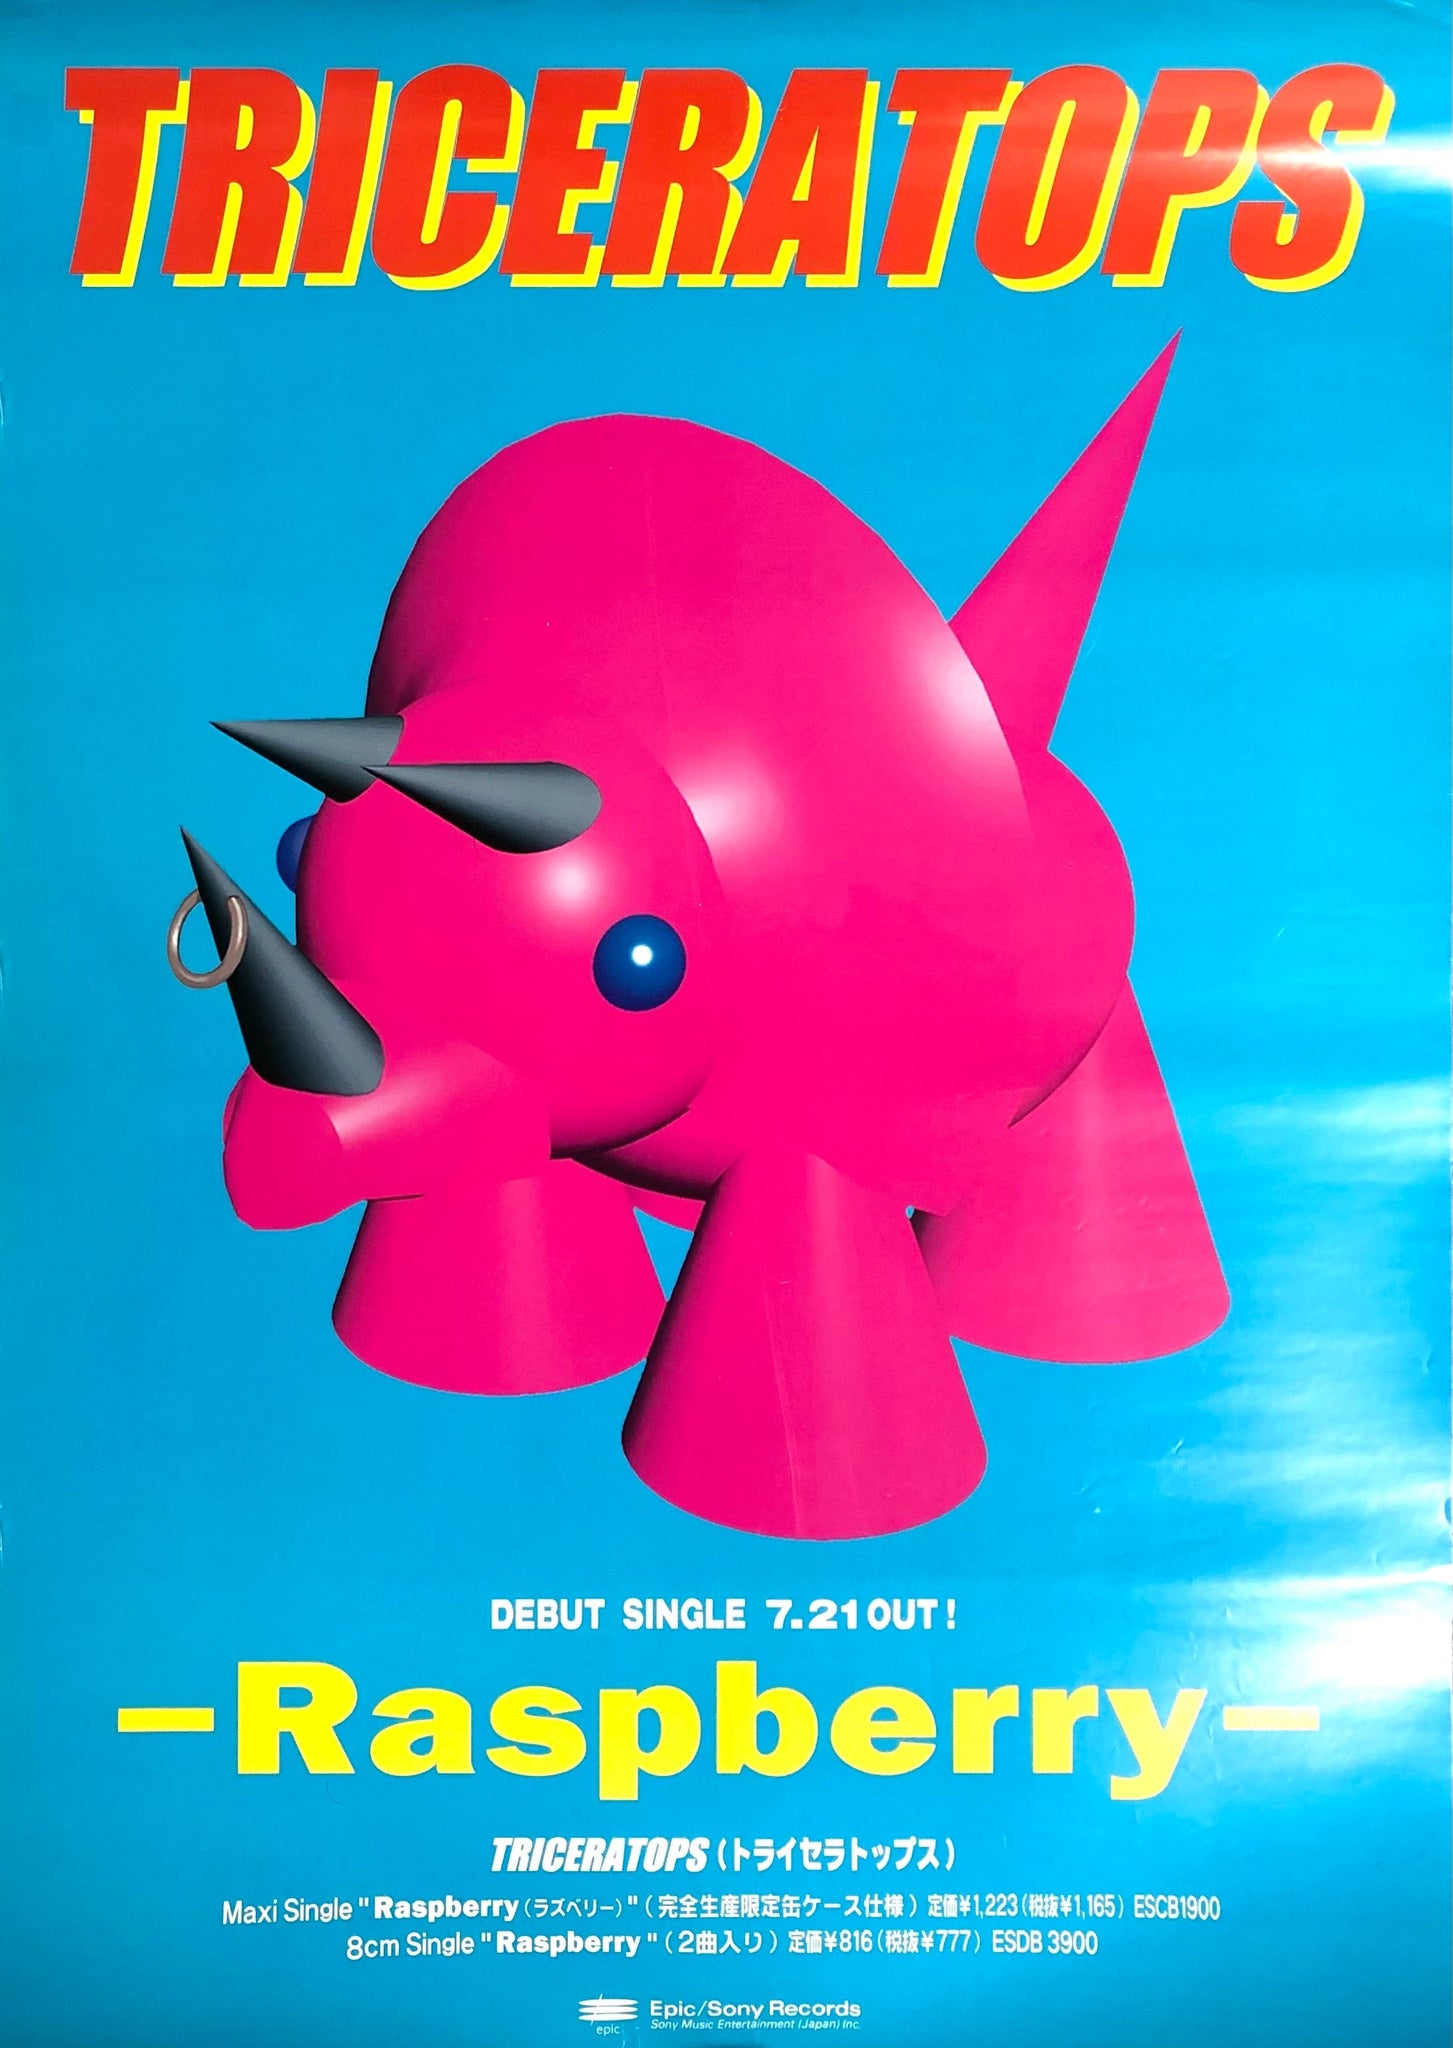 Triceratops - Raspberry, 1998